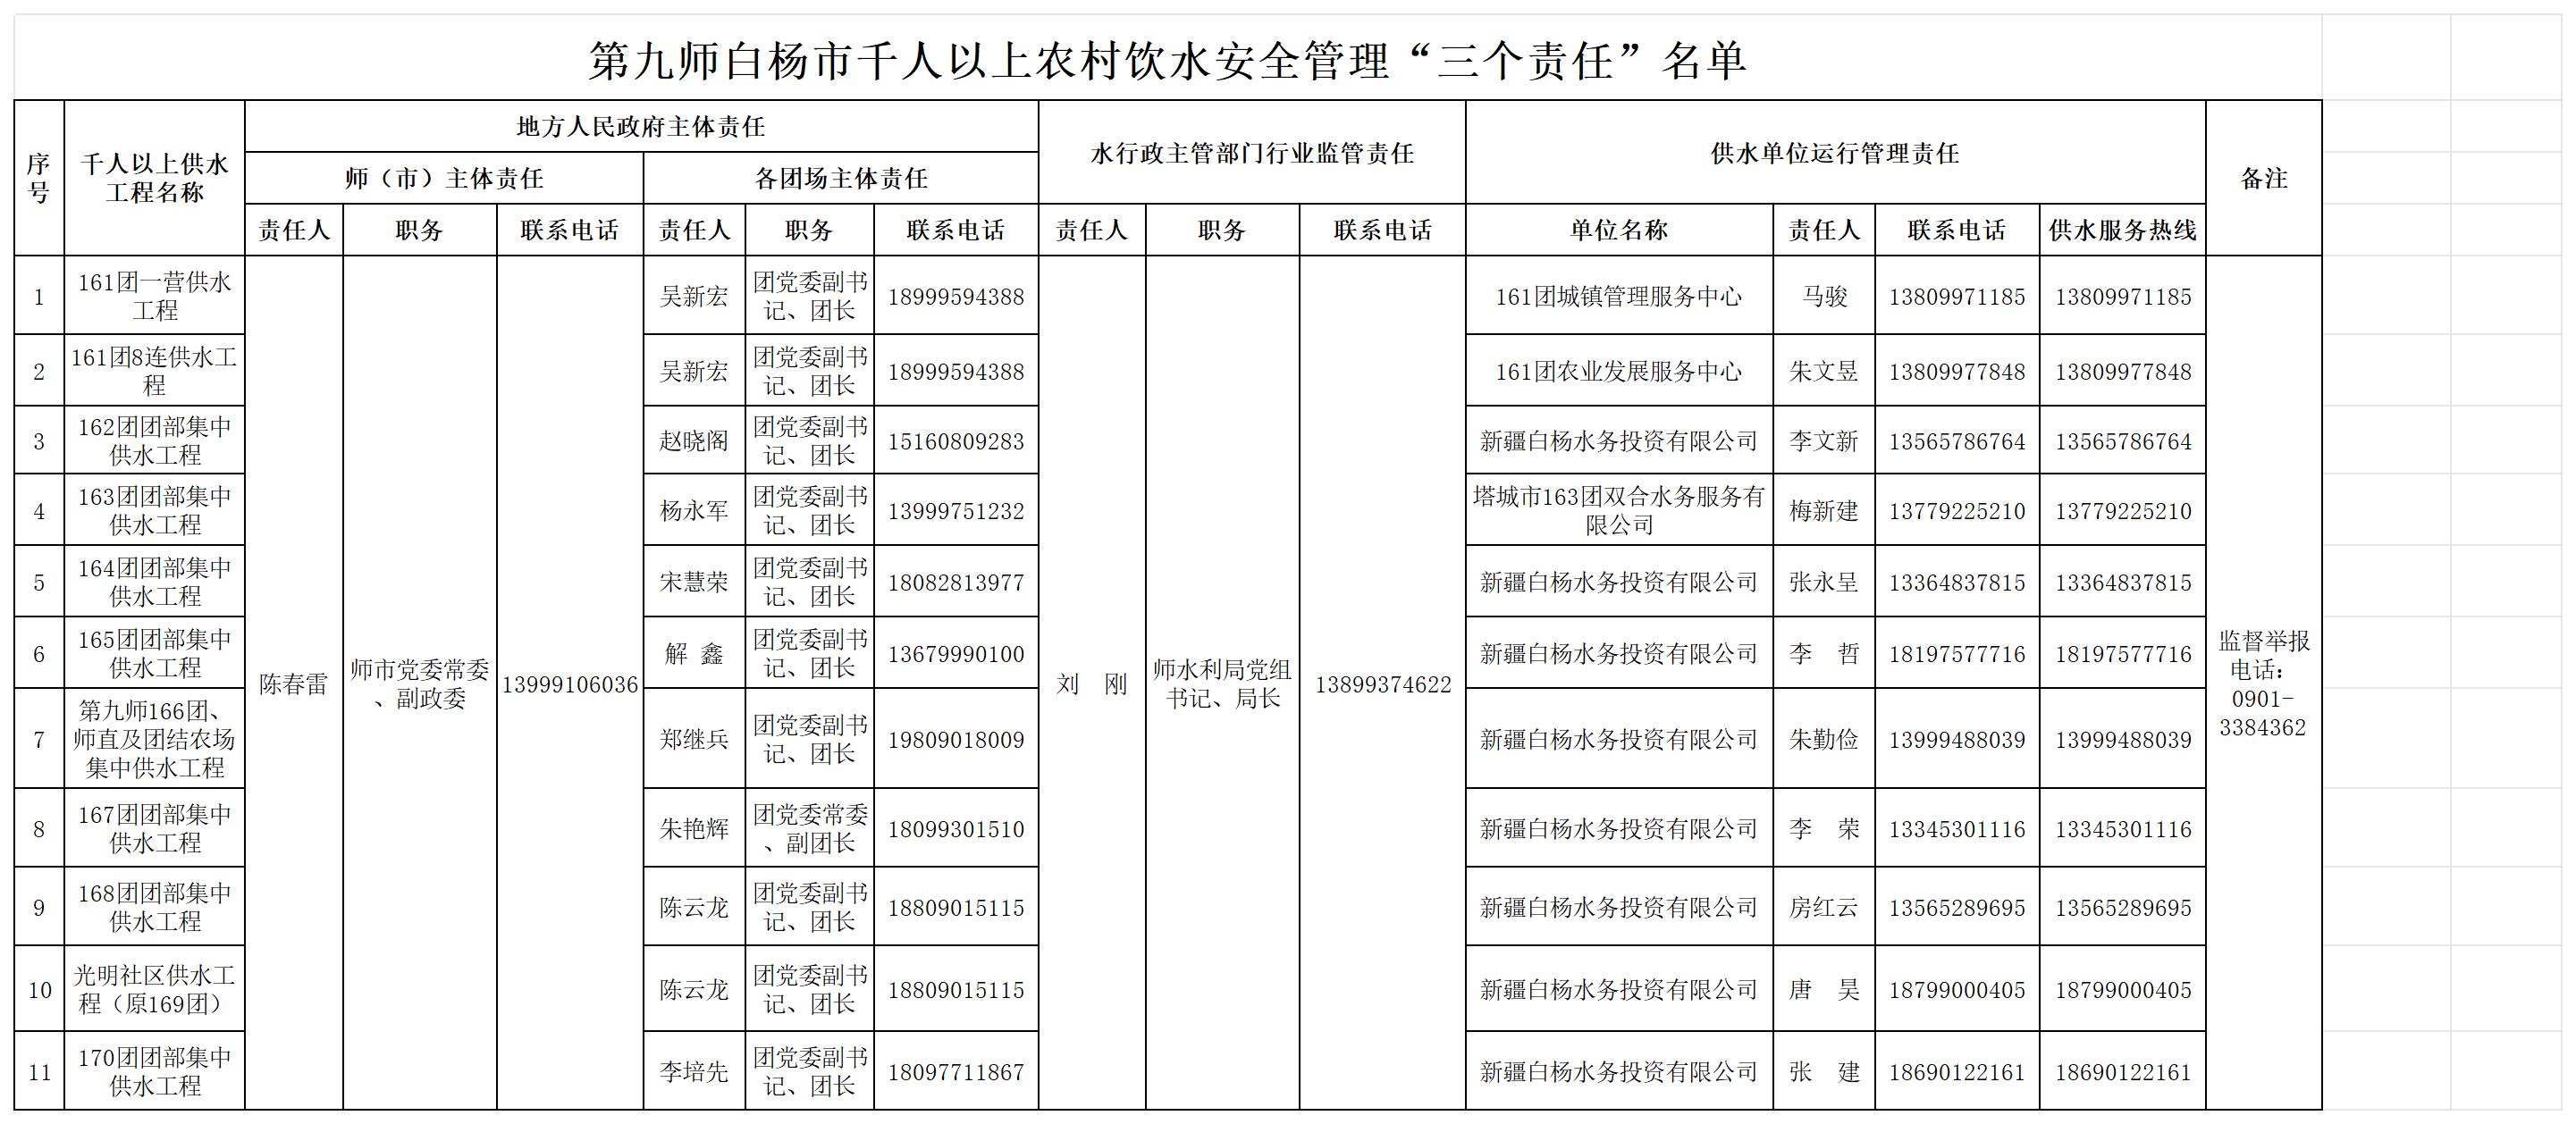 第九师白杨市千人以上农村饮水安全管理“三个责任”名单.jpg